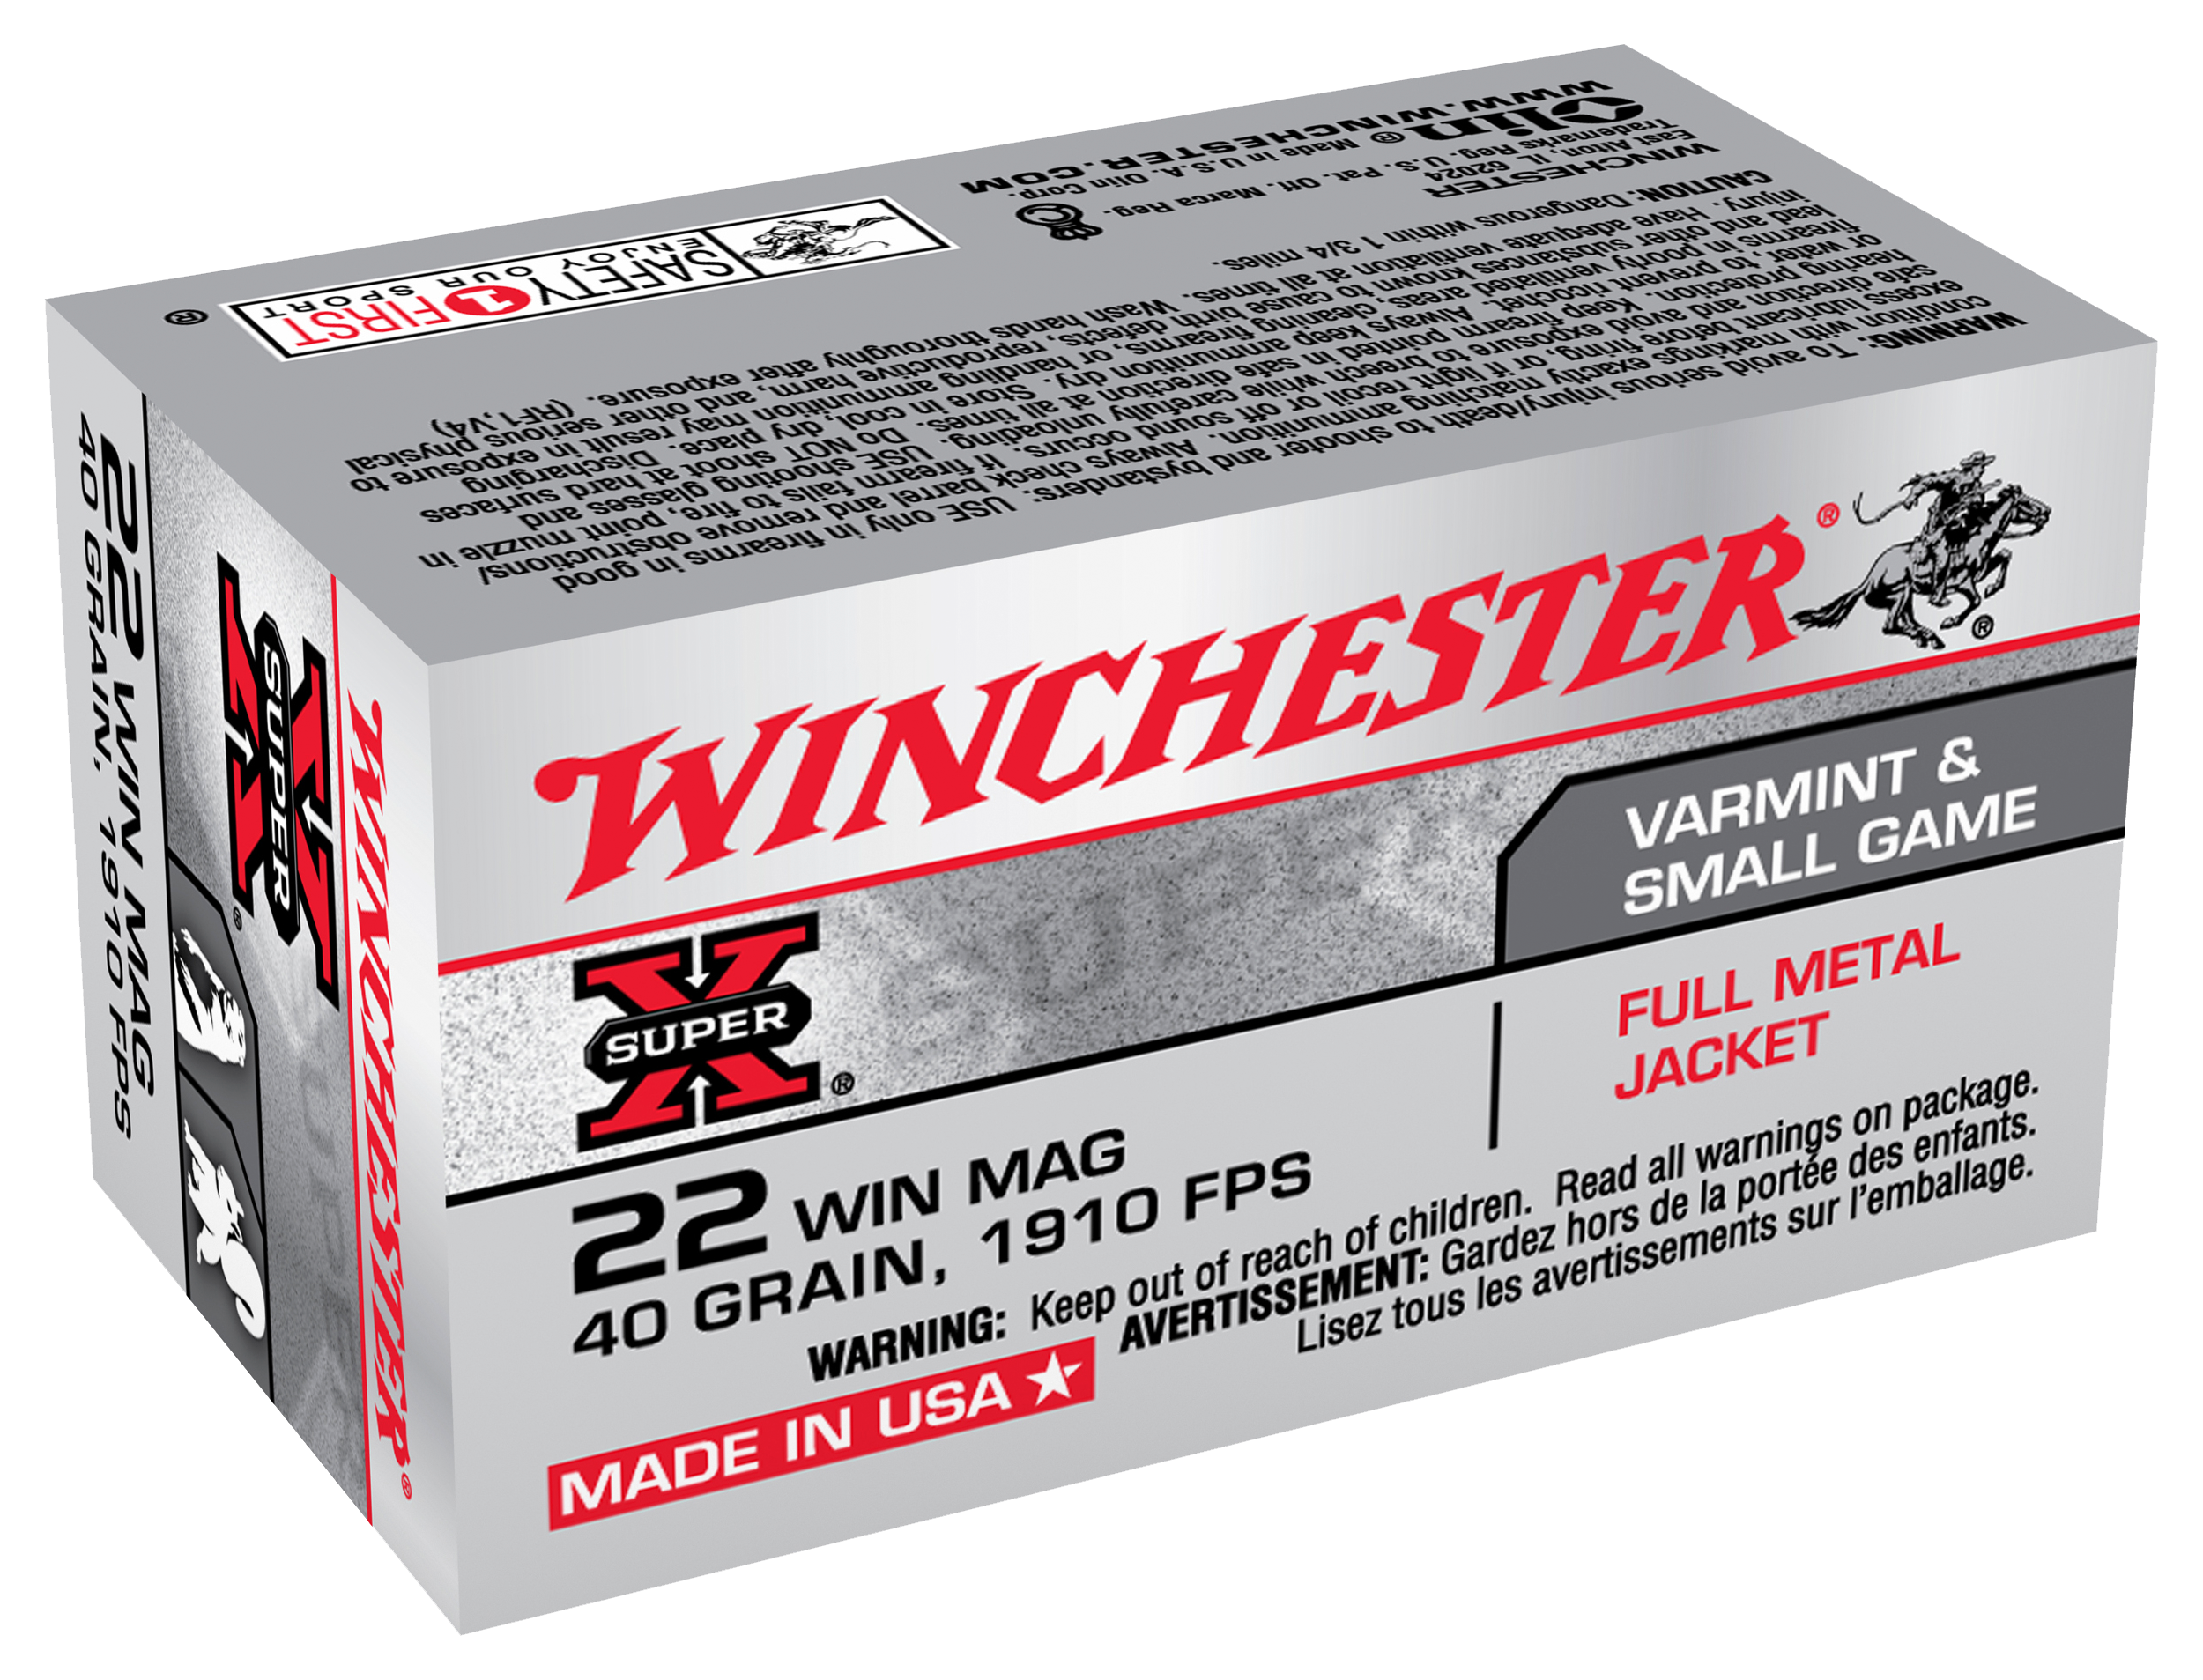 Winchester Super-X 22 WIN MAG Rimfire Ammo - 50 Rounds